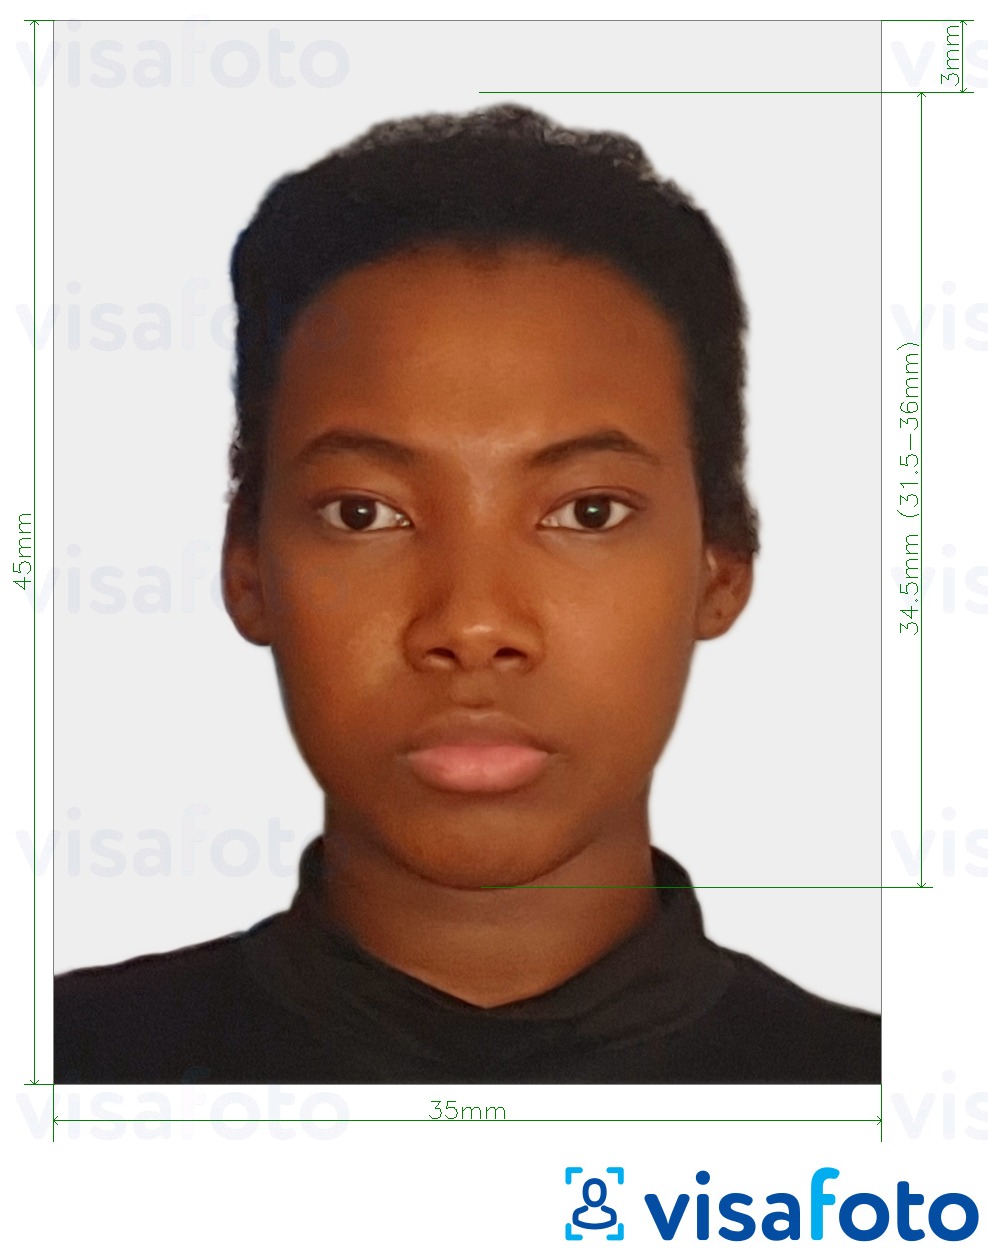 نمونه ی یک عکس برای پاسپورت آفریقای جنوبی 35x45 میلی متر (3.5x4.5 سانتی متر) با مشخصات دقیق